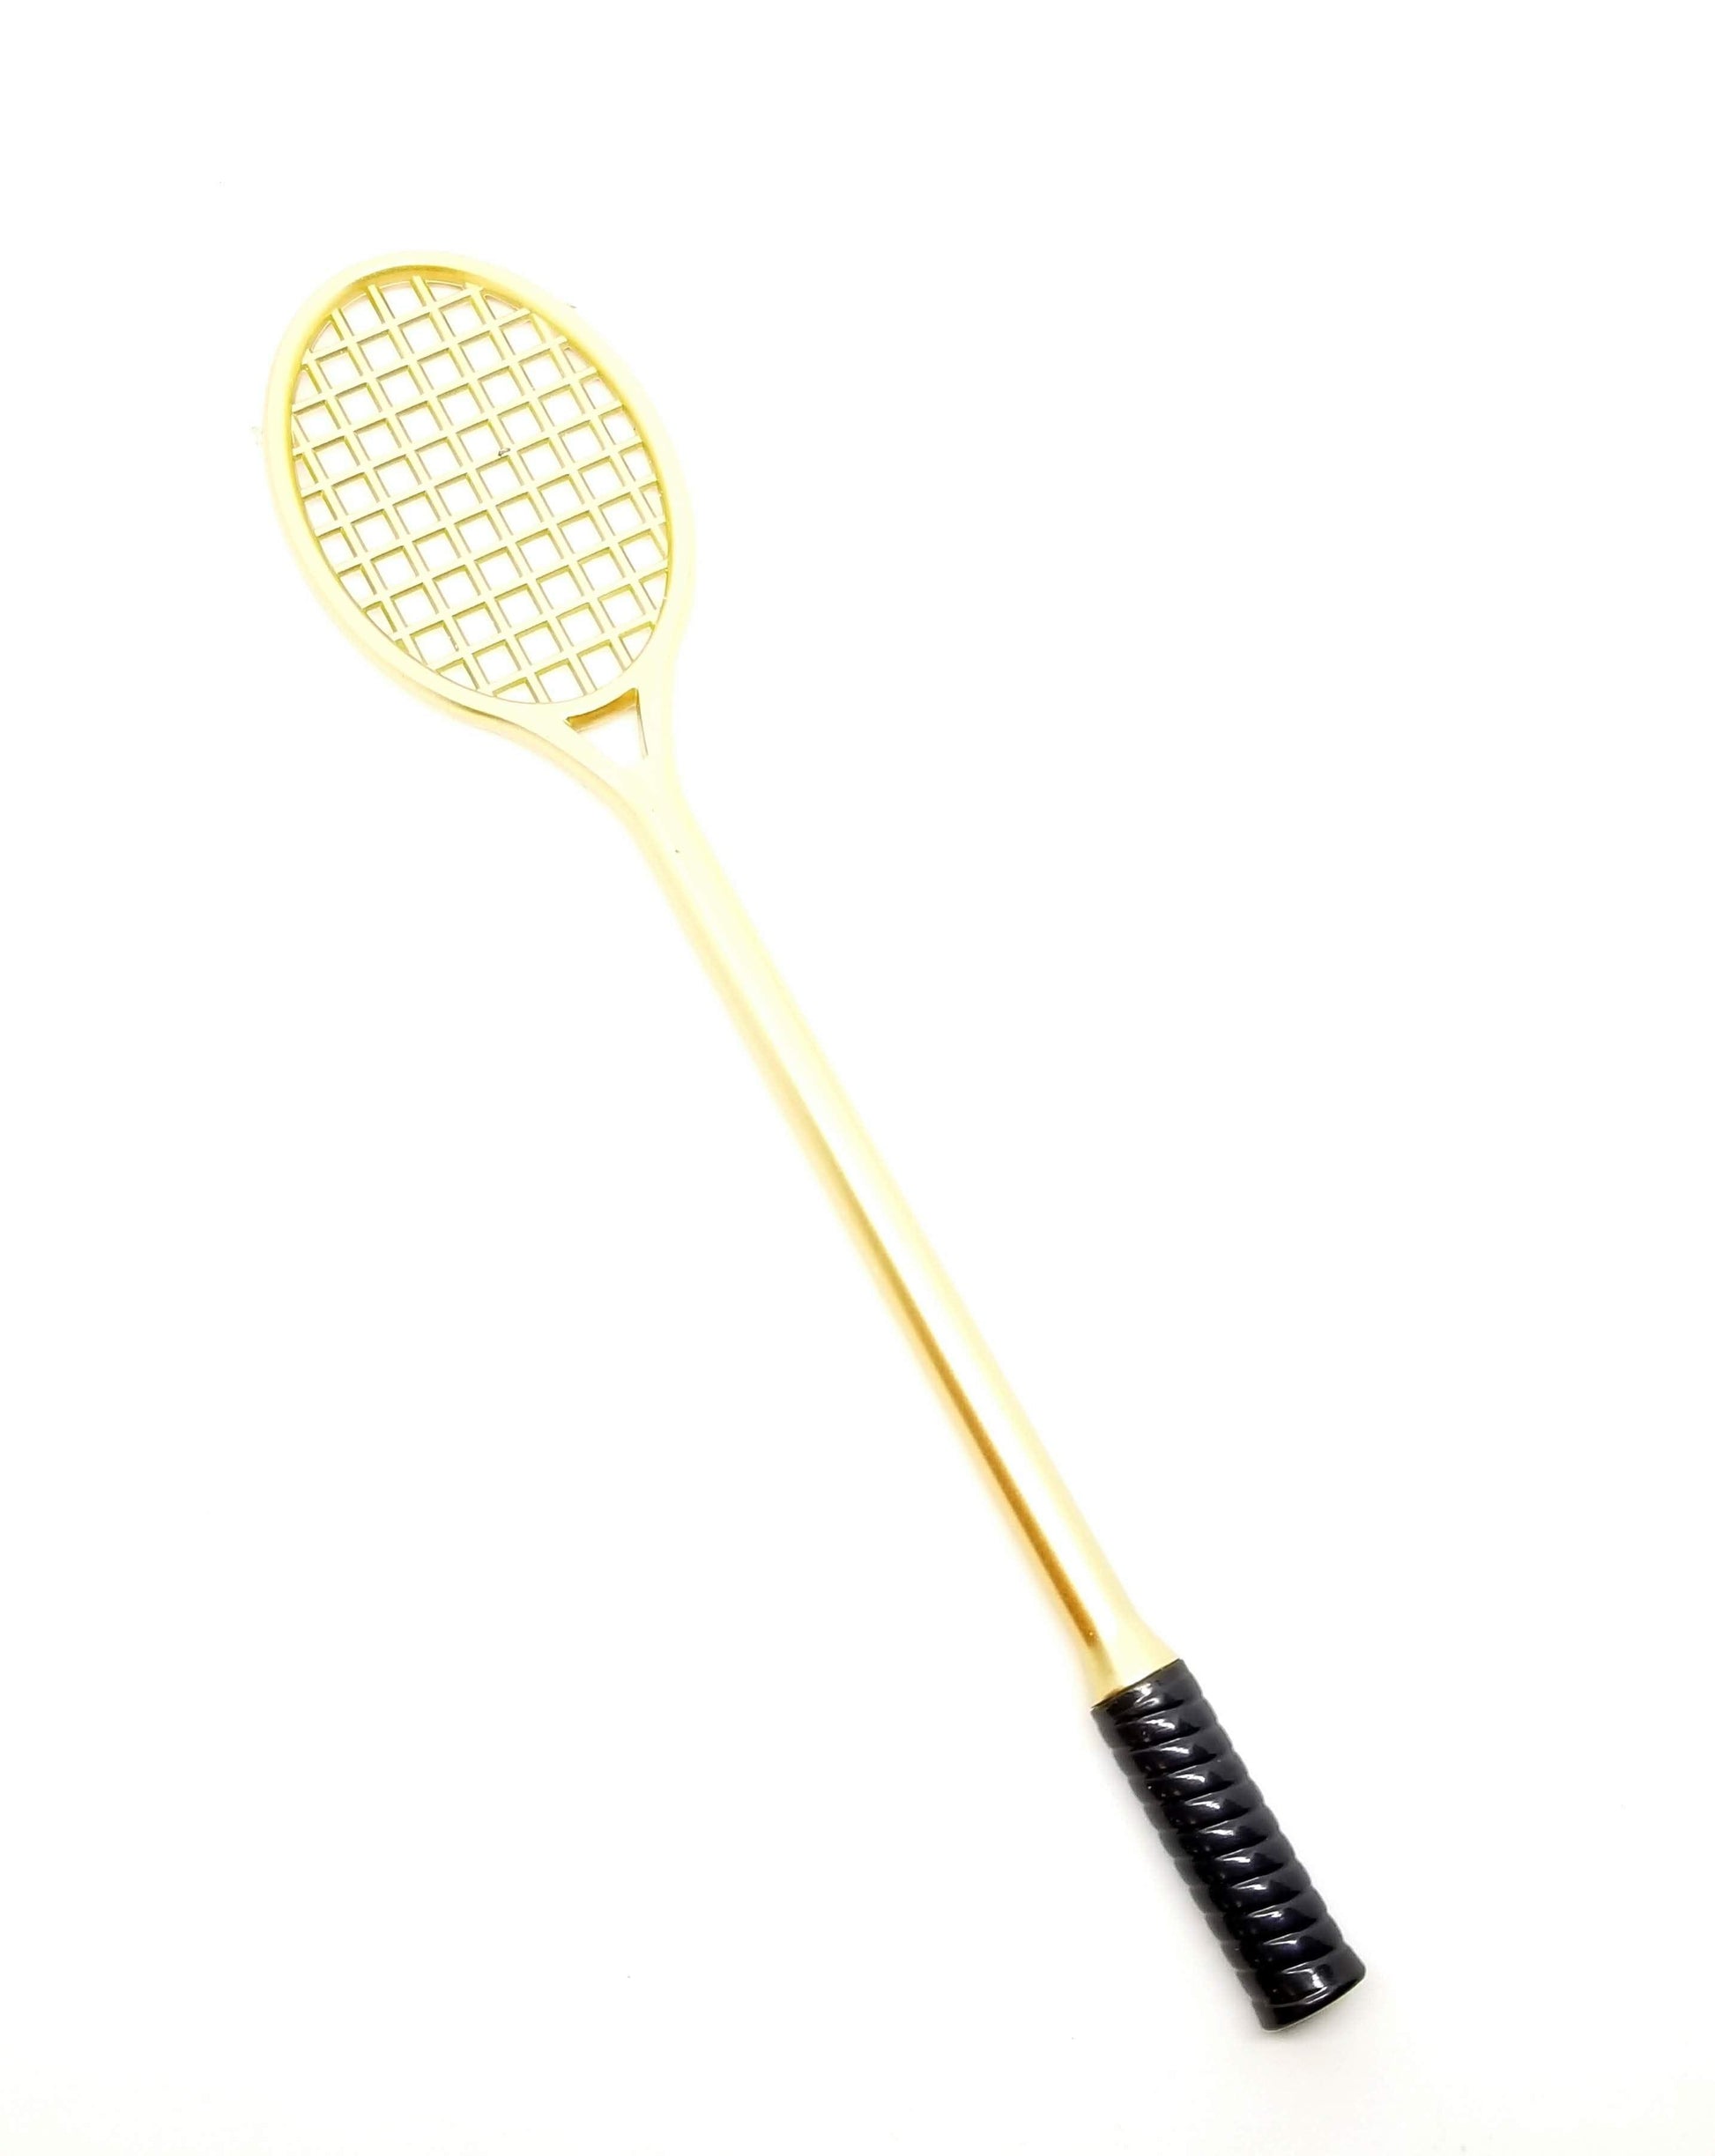 Slime Pressing Tennis Racket Gold Slime tool by Hoshimi Slimes | Hoshimi Slimes LLC